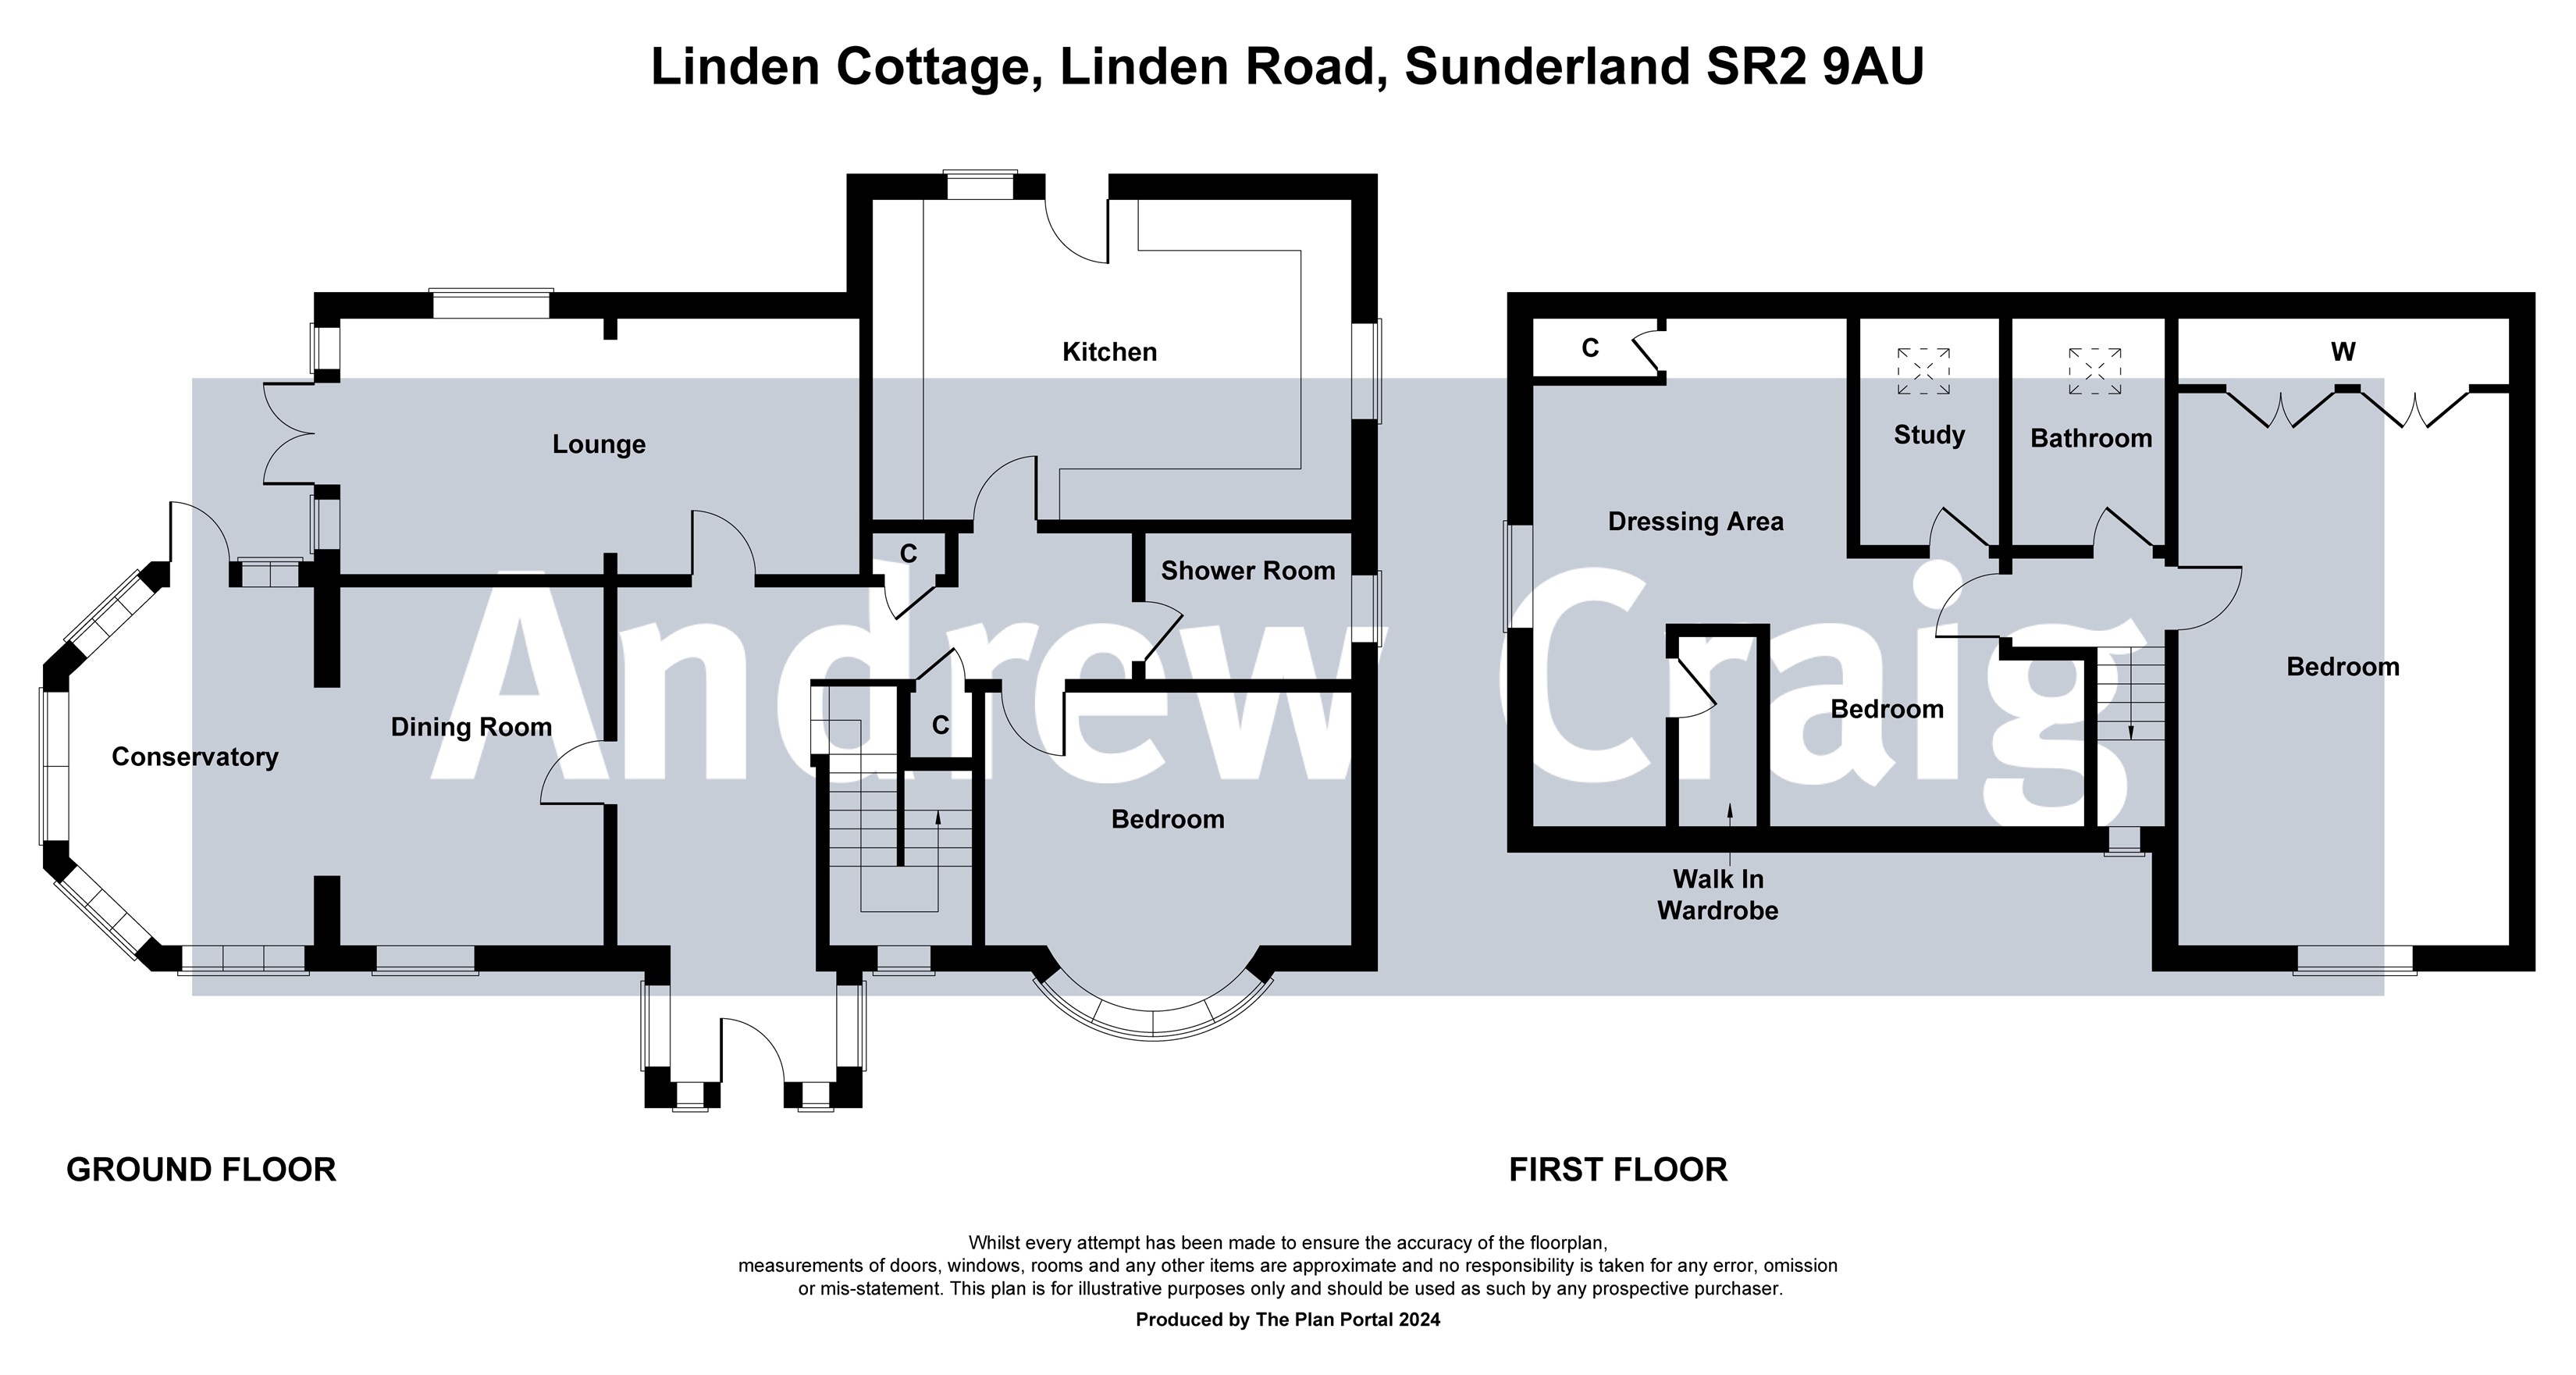 3 bed detached cottage for sale in Linden Road, Sunderland - Property floorplan